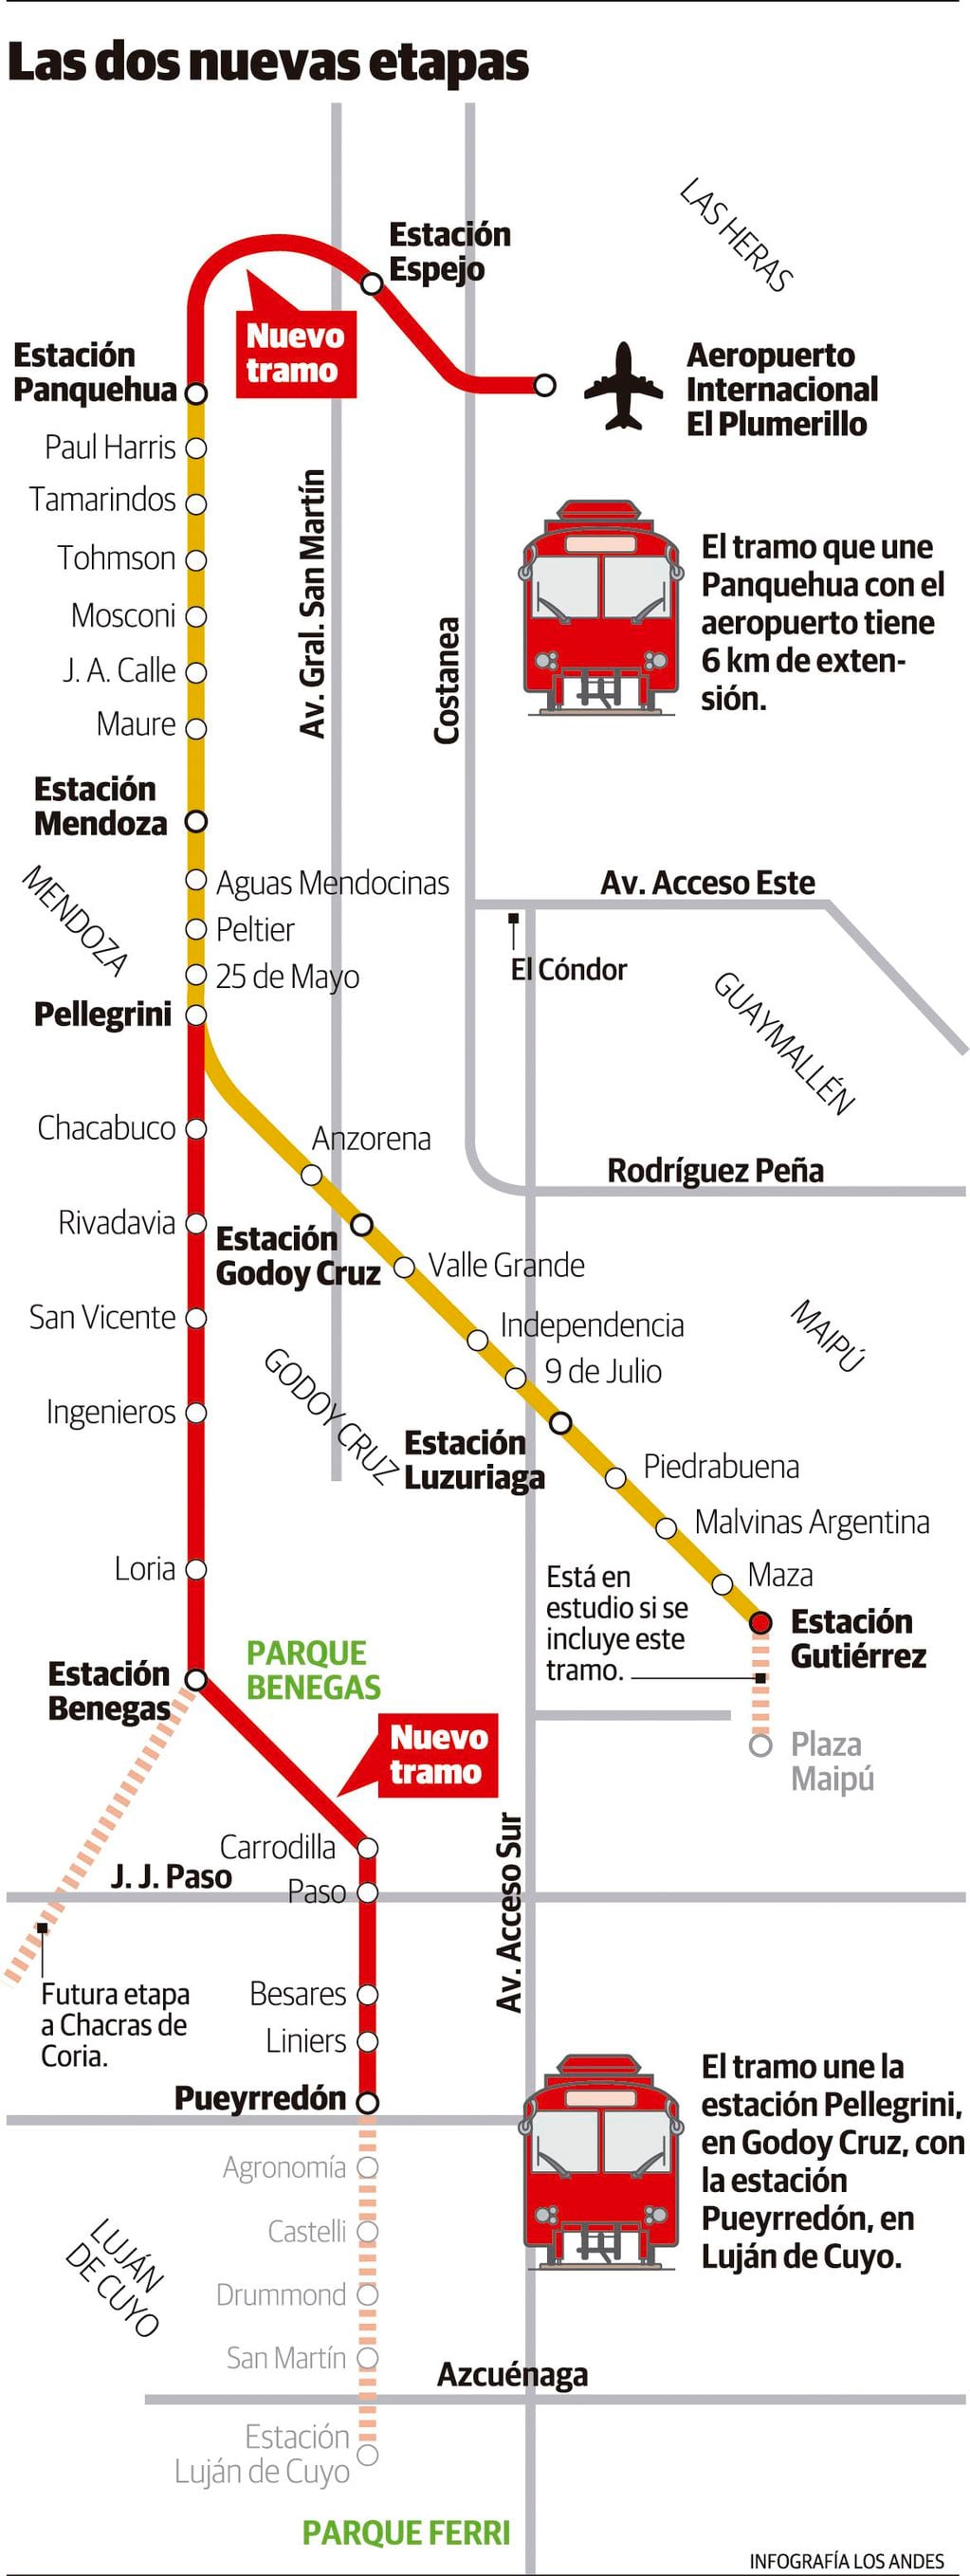 Nuevas etapas del metrotranvía: Panquehua/Aeropuerto, en Las Heras y Estación Pellegrini/Estación Pueyrredón, en Godoy Cruz y Luján de Cuyo. Gustavo Guevara